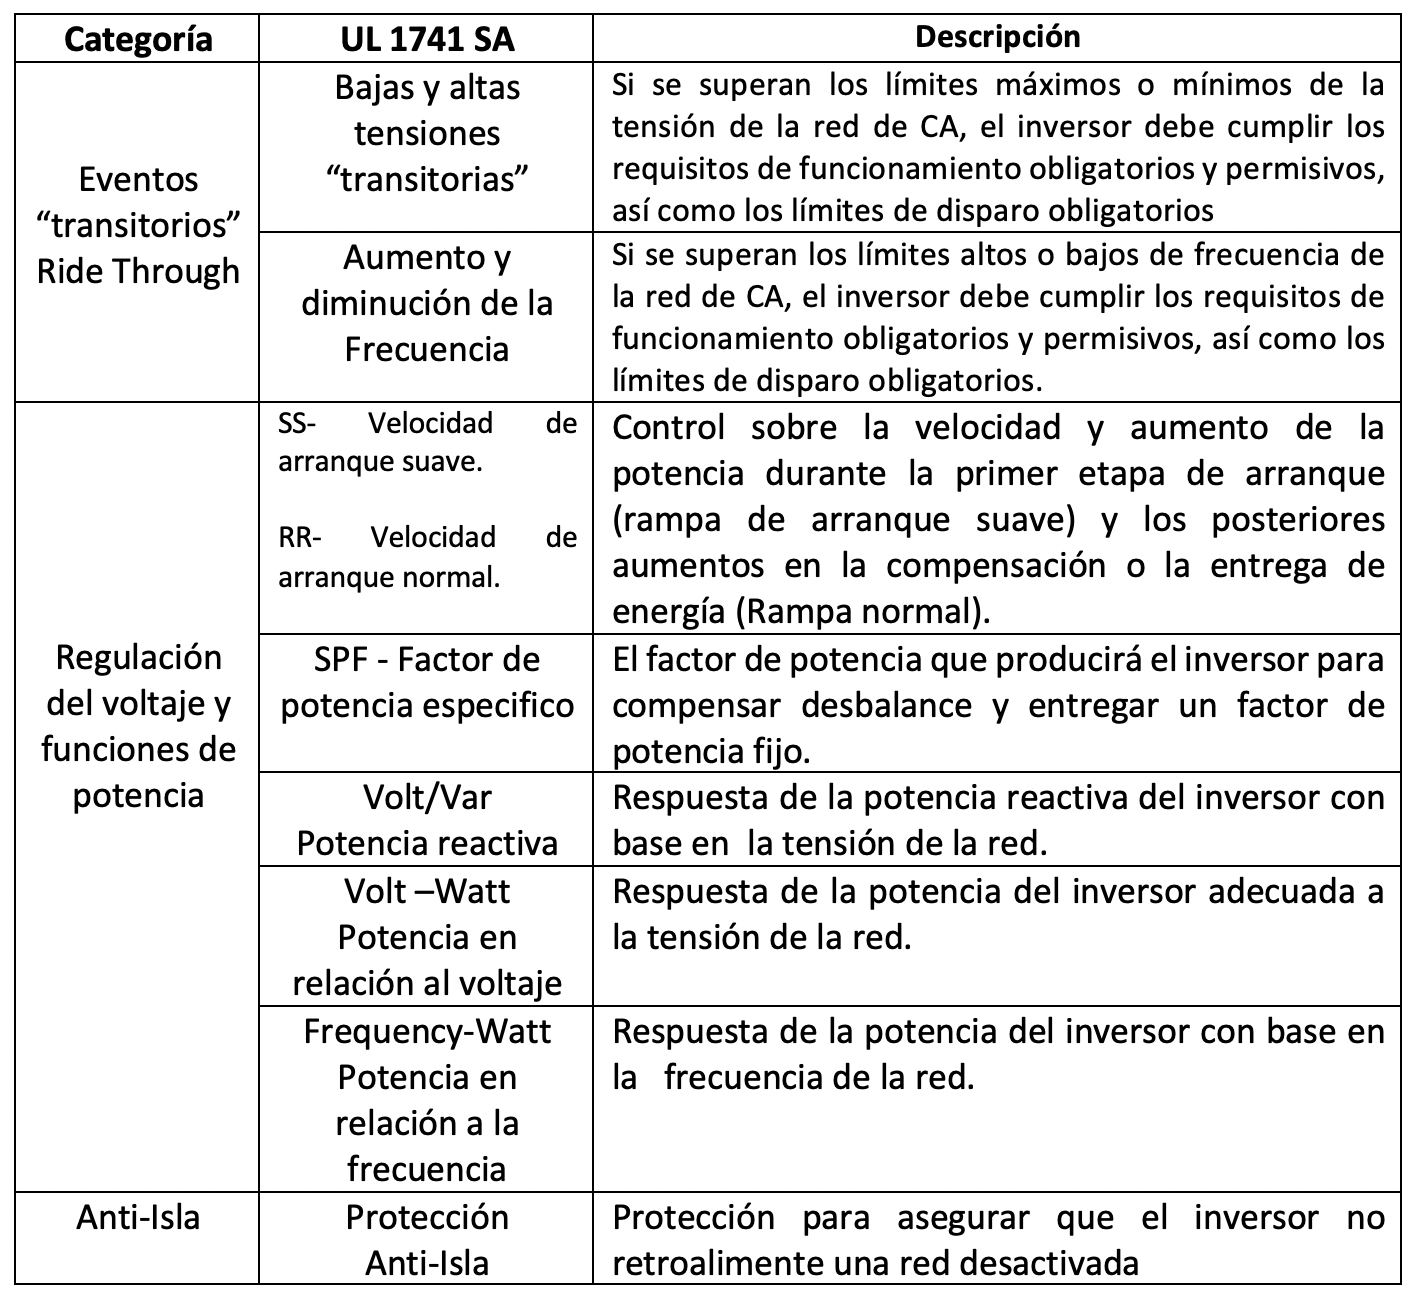 Efectos directos e indirectos del coronavirus sobre el comercio de sistemas fotovoltaicos en México:Nuevos requisitos técnicos para interconexión